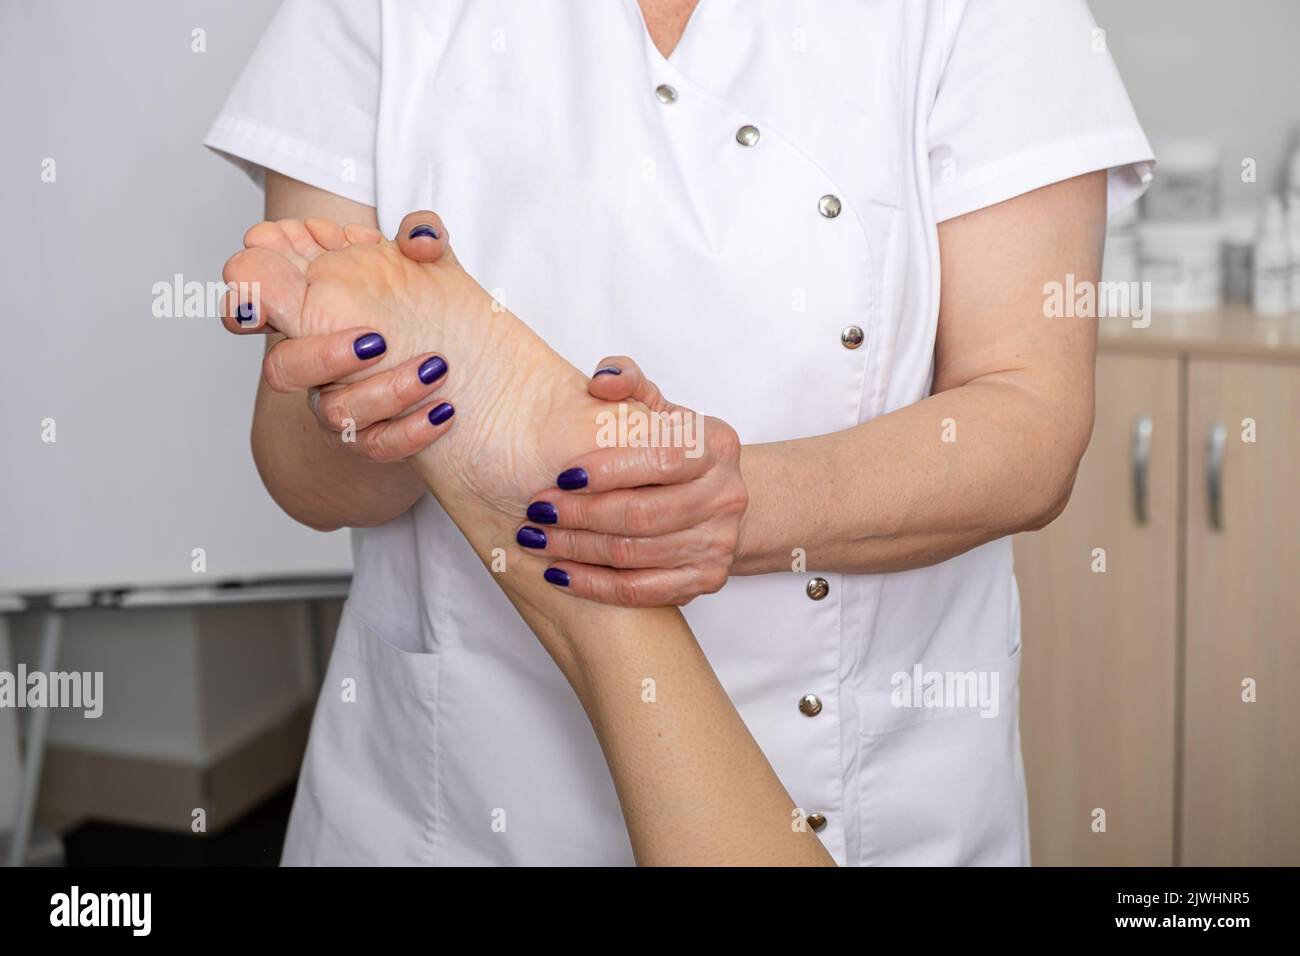 Foot massage in the spa salon. Body care concept Stock Photo